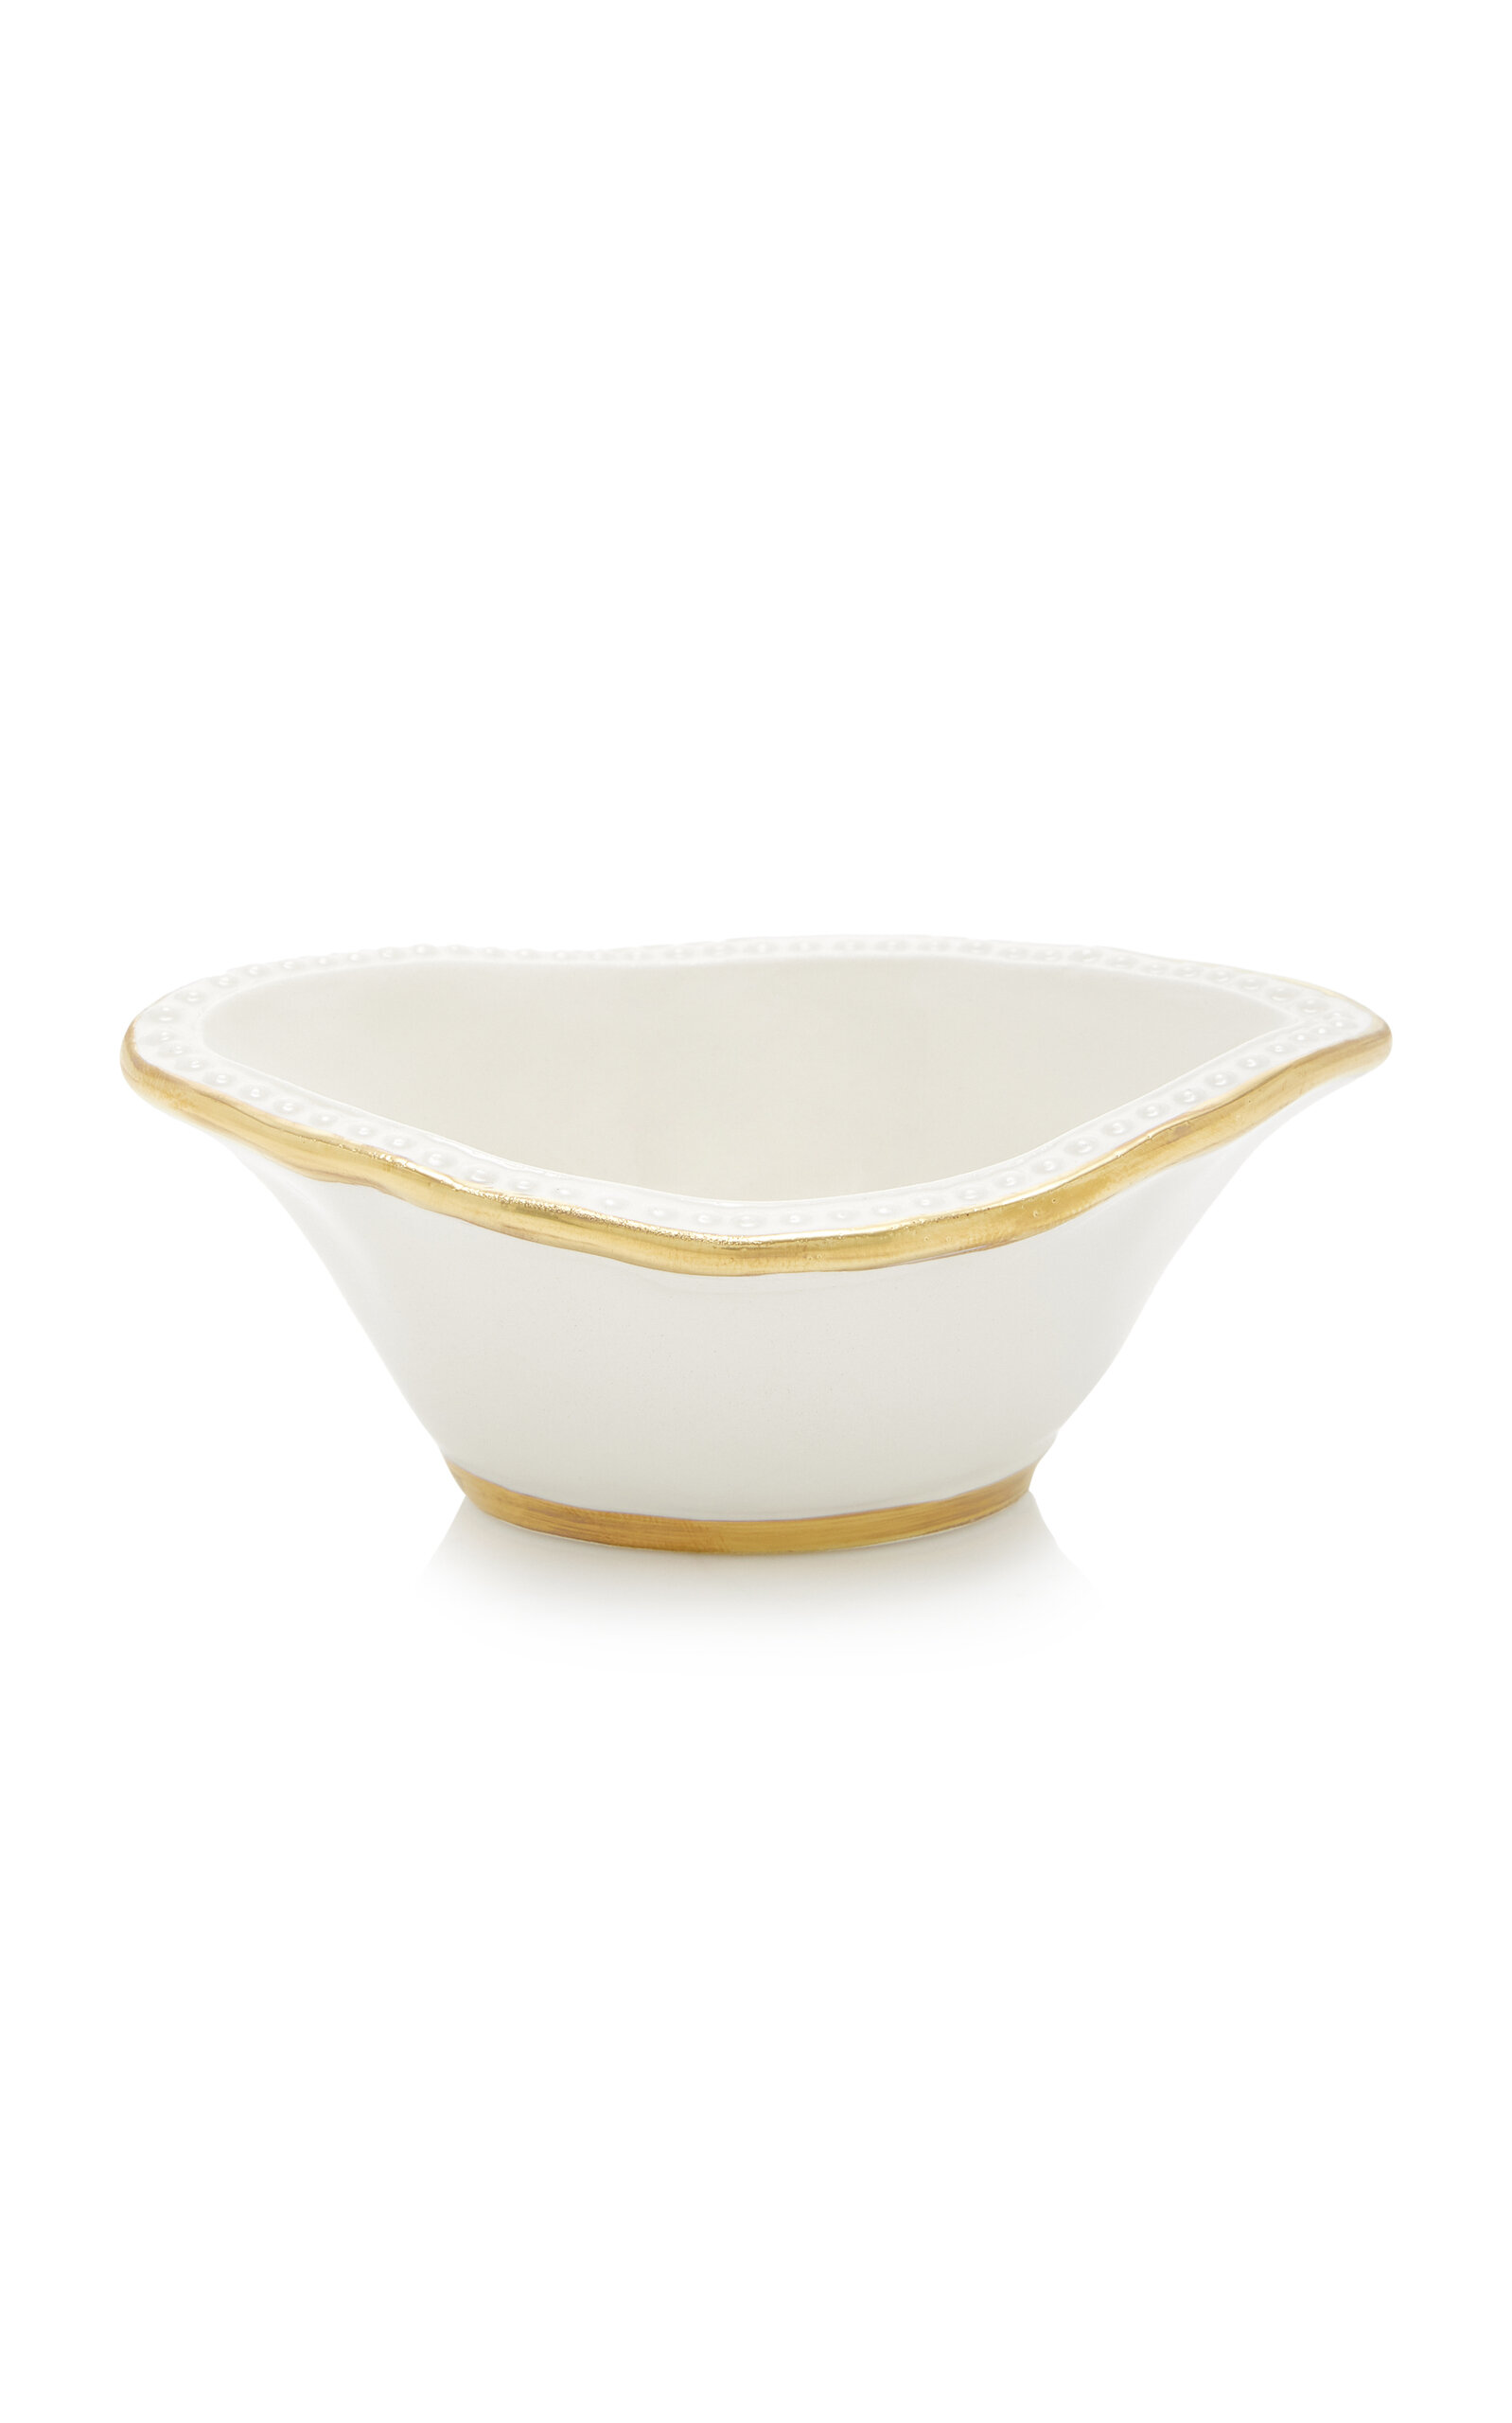 Moda Domus Little Boat Creamware Salt And Pepper Bowl In Gold